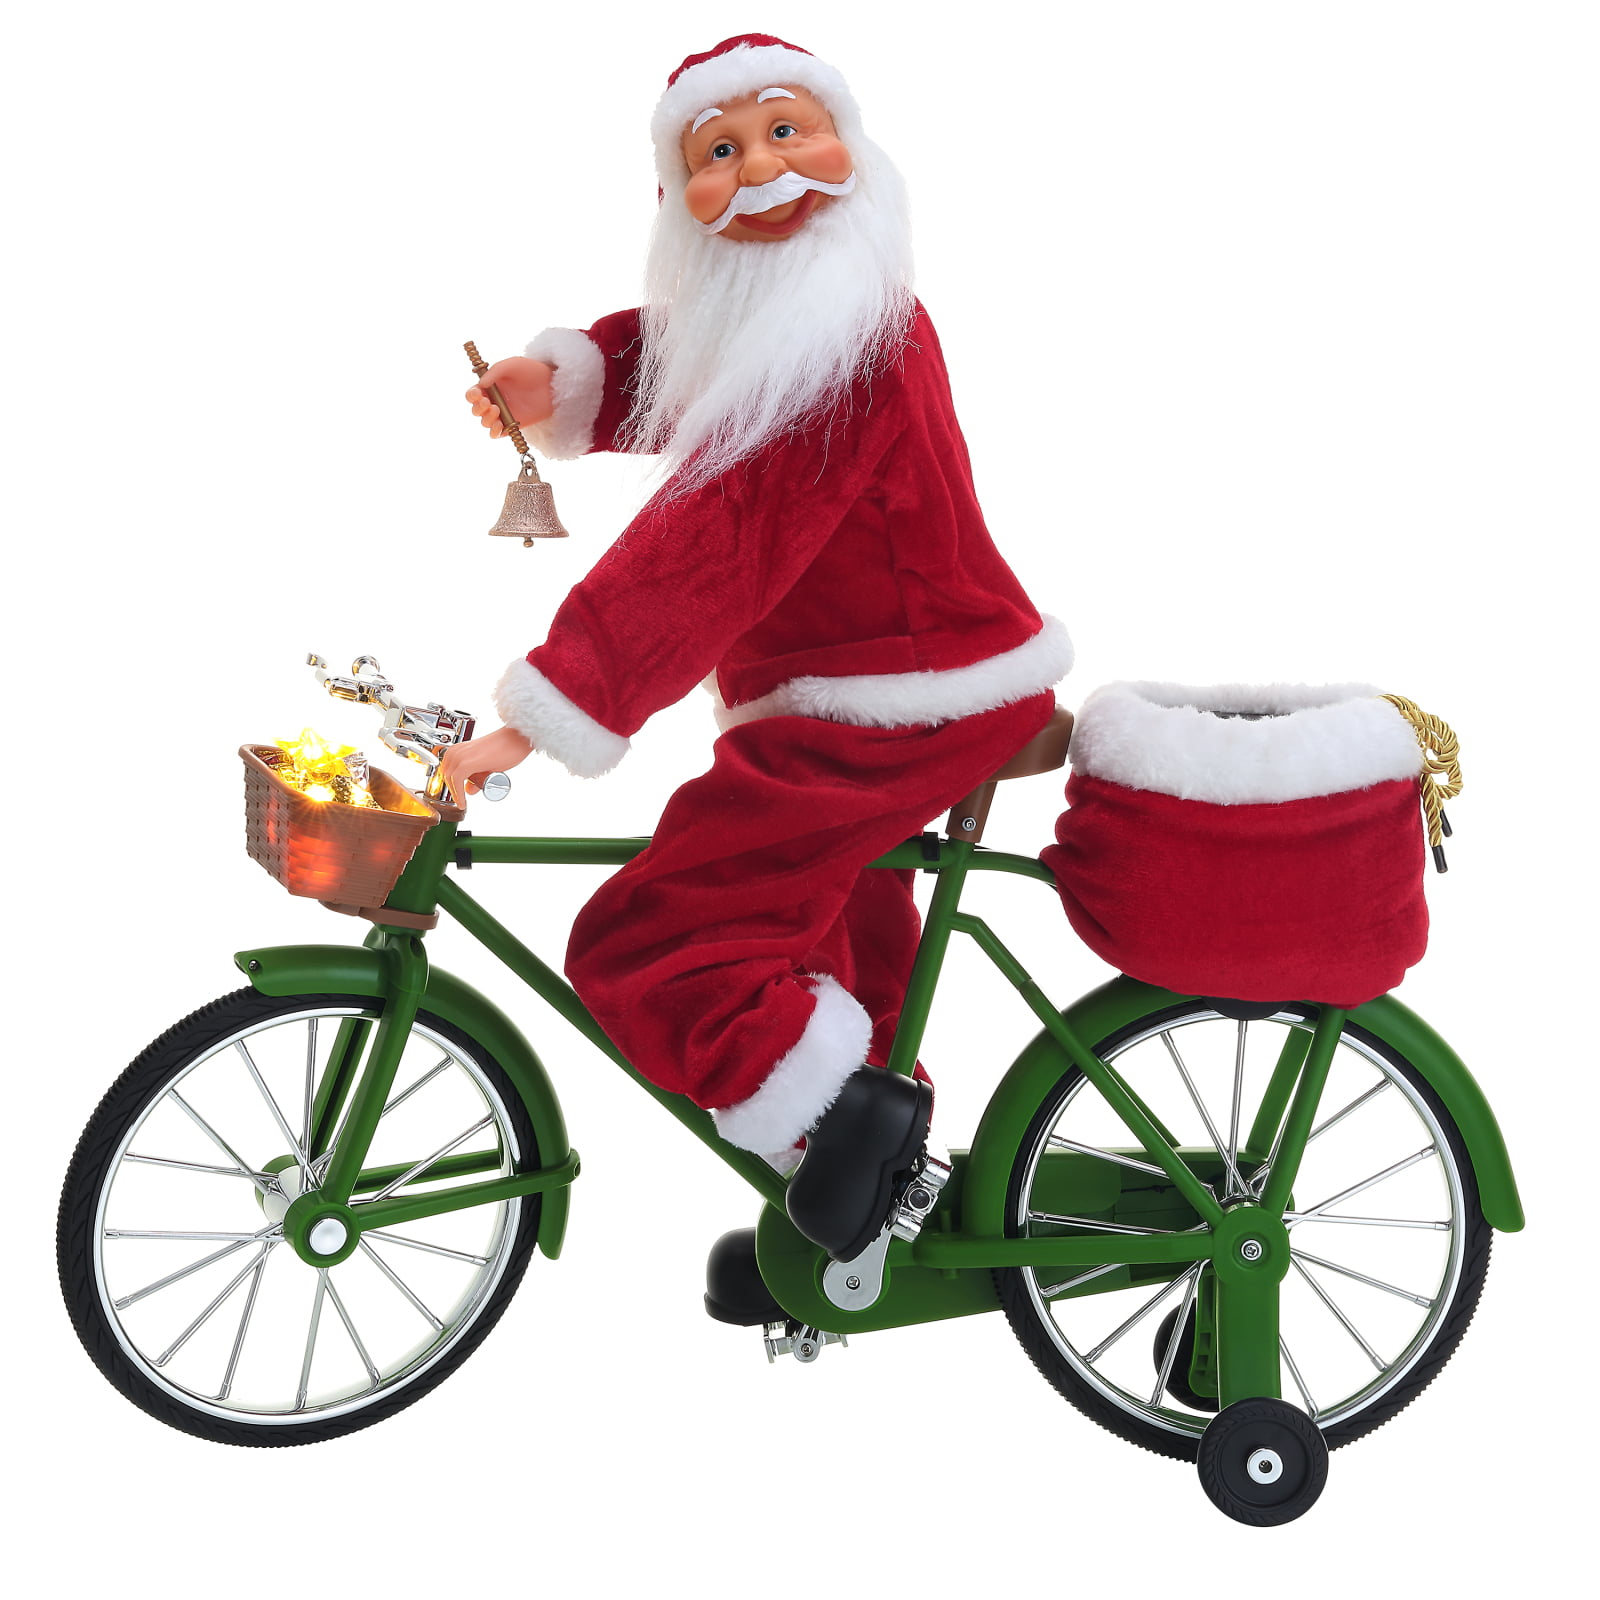 Details about   Lead Santa Riding a Bike 